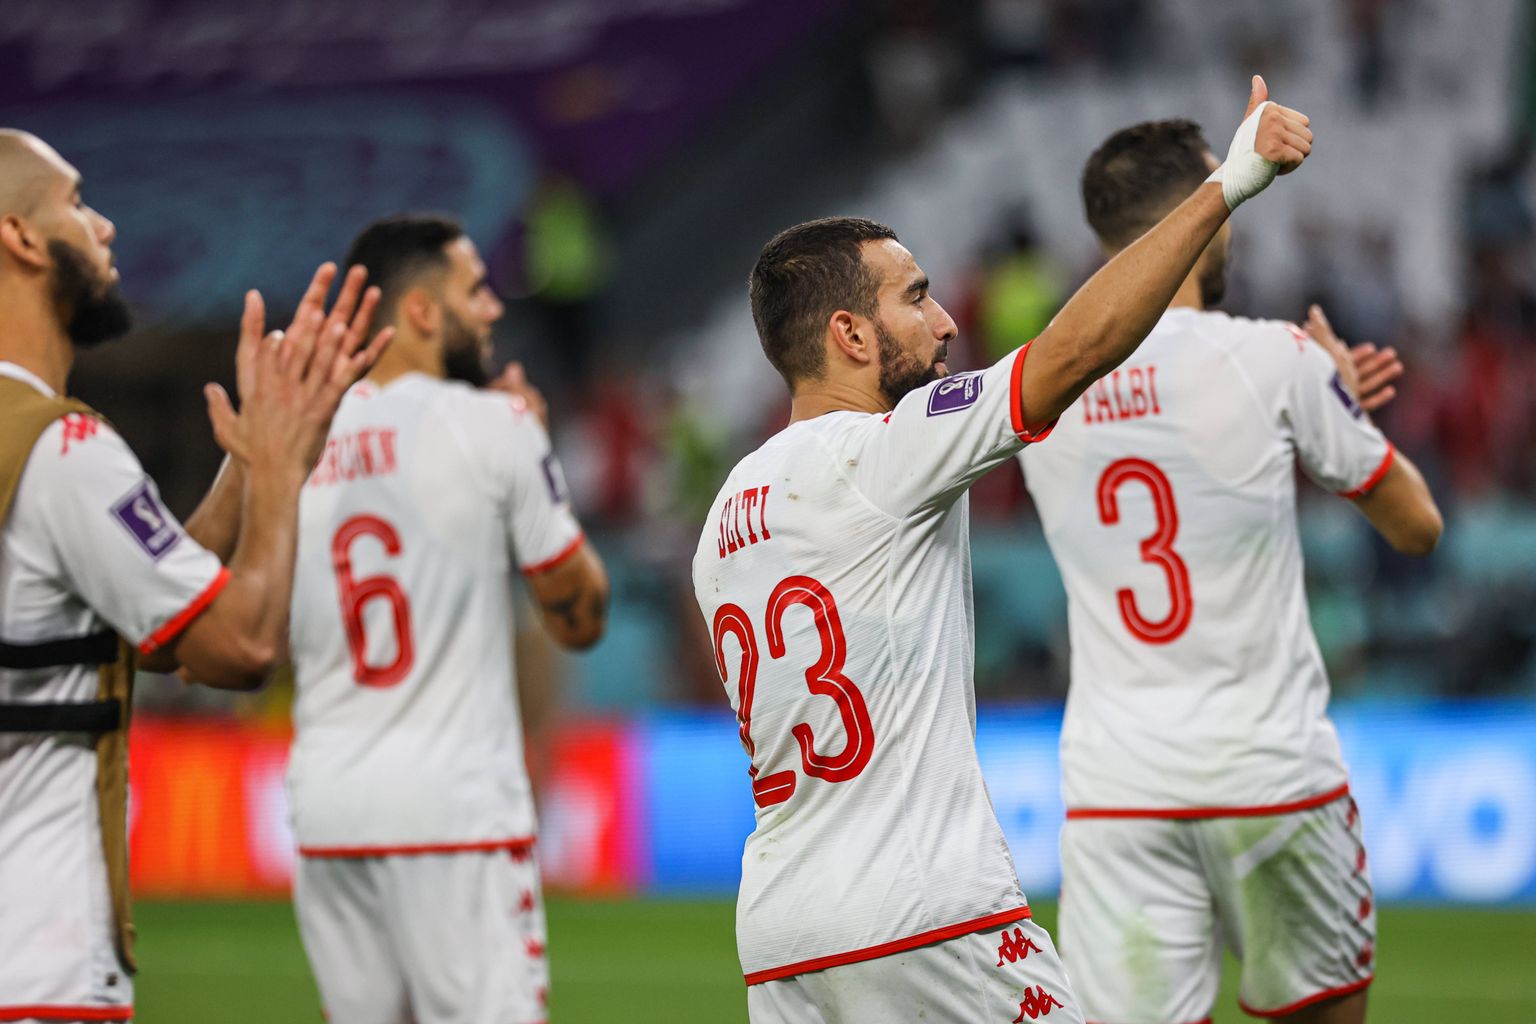 Tuneesia pallurid tänamas pärast avamängu viike oma poolehoidjaid.